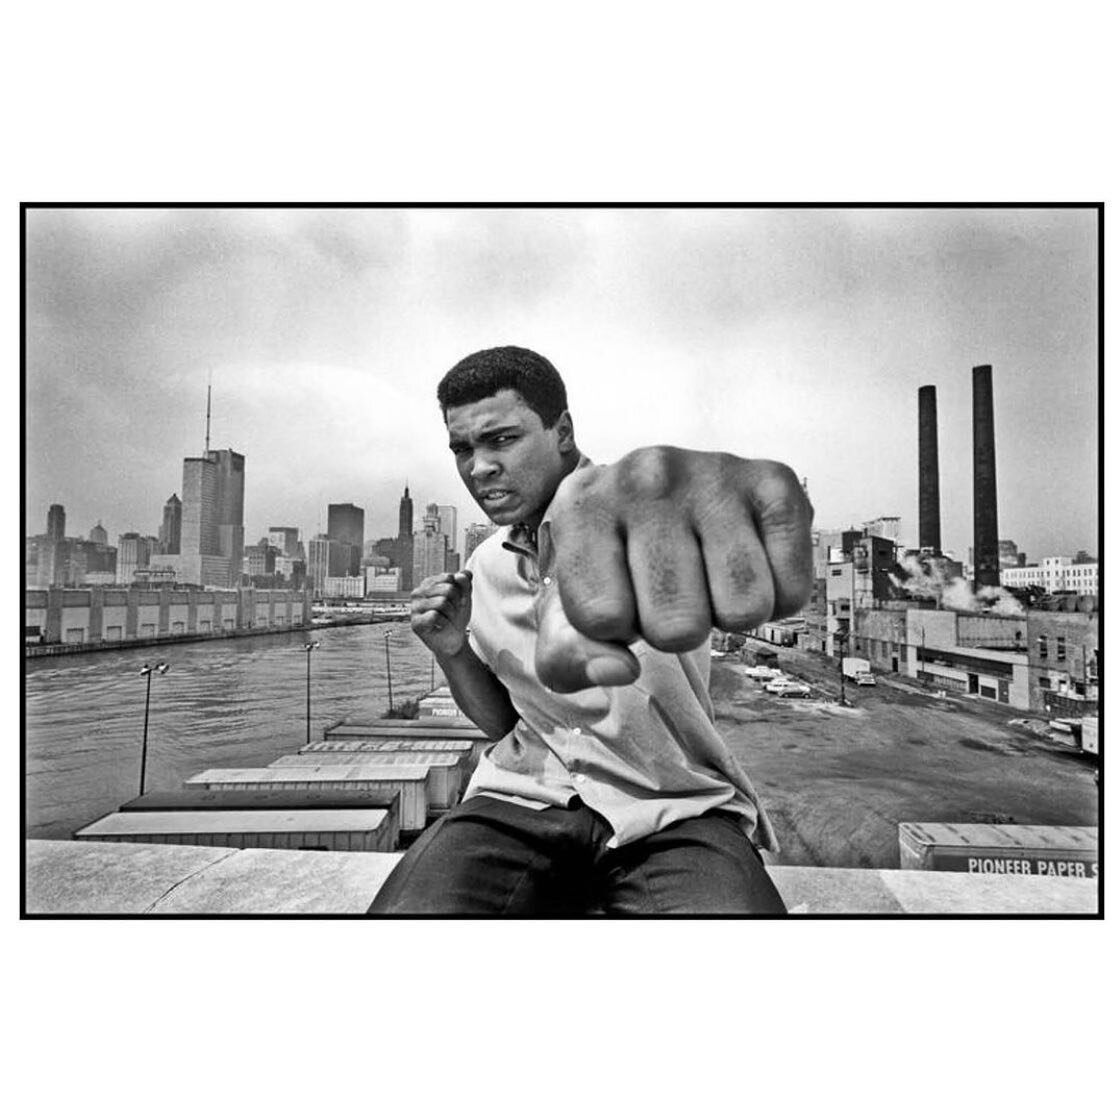 -
PHOTO: USA. Chicago, Illinois. 1966. Muhammad Ali on a bridge overlooking the Chicago River and the city's skyline. 
. 
&copy; @thomashoepker/#MagnumPhotos
.
.
#thomashoepker #documentary #photography #photojournalism #magnum #magnumphotos #magnump